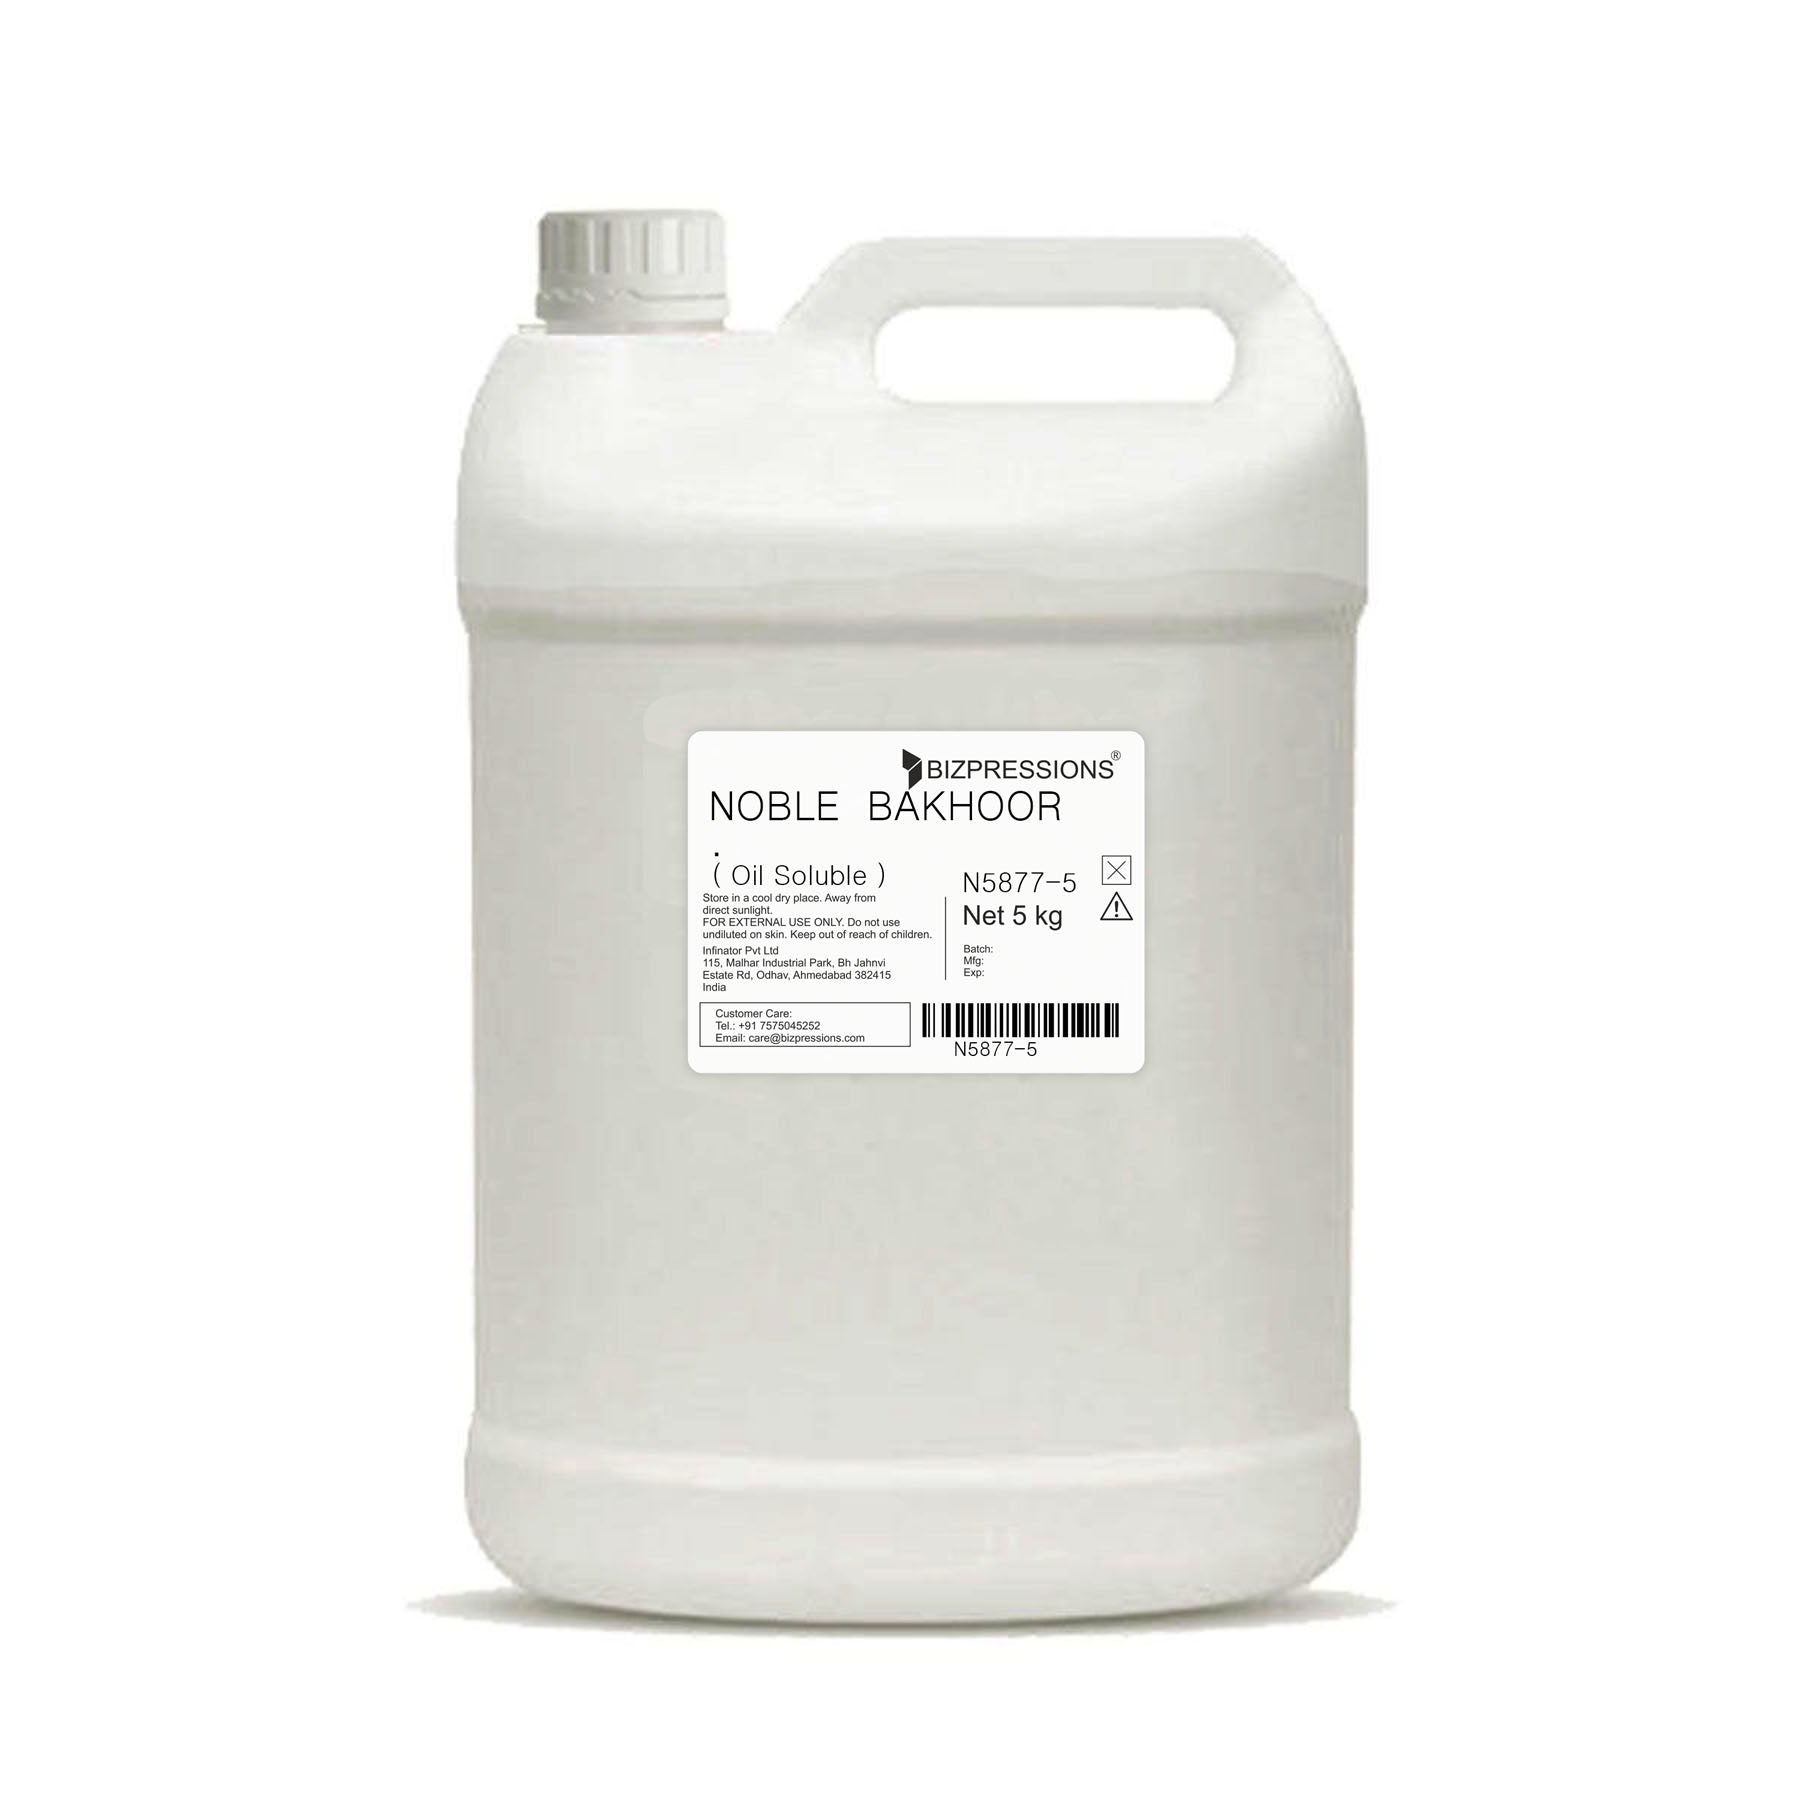 NOBLE BAKHOOR - Fragrance ( Oil Soluble ) - 5 kg